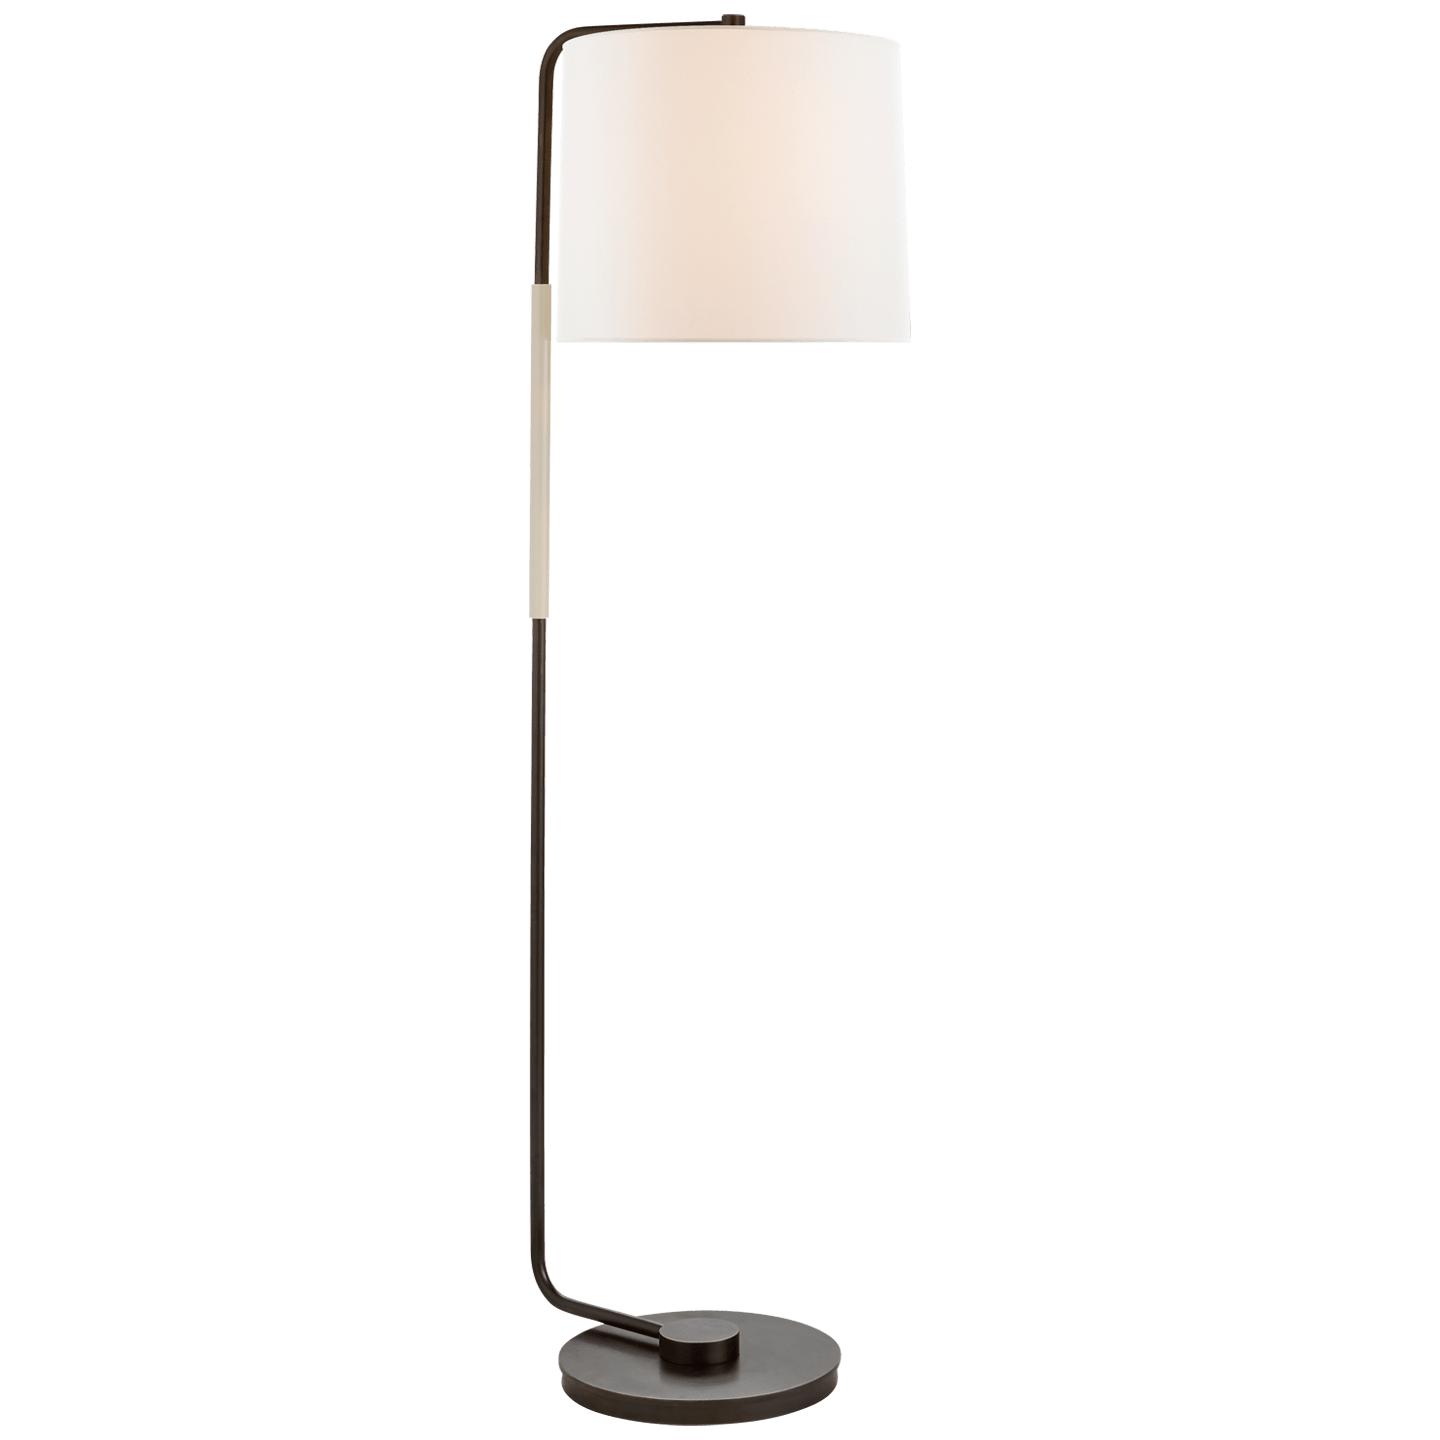 Купить Торшер Swing Articulating Floor Lamp в интернет-магазине roooms.ru